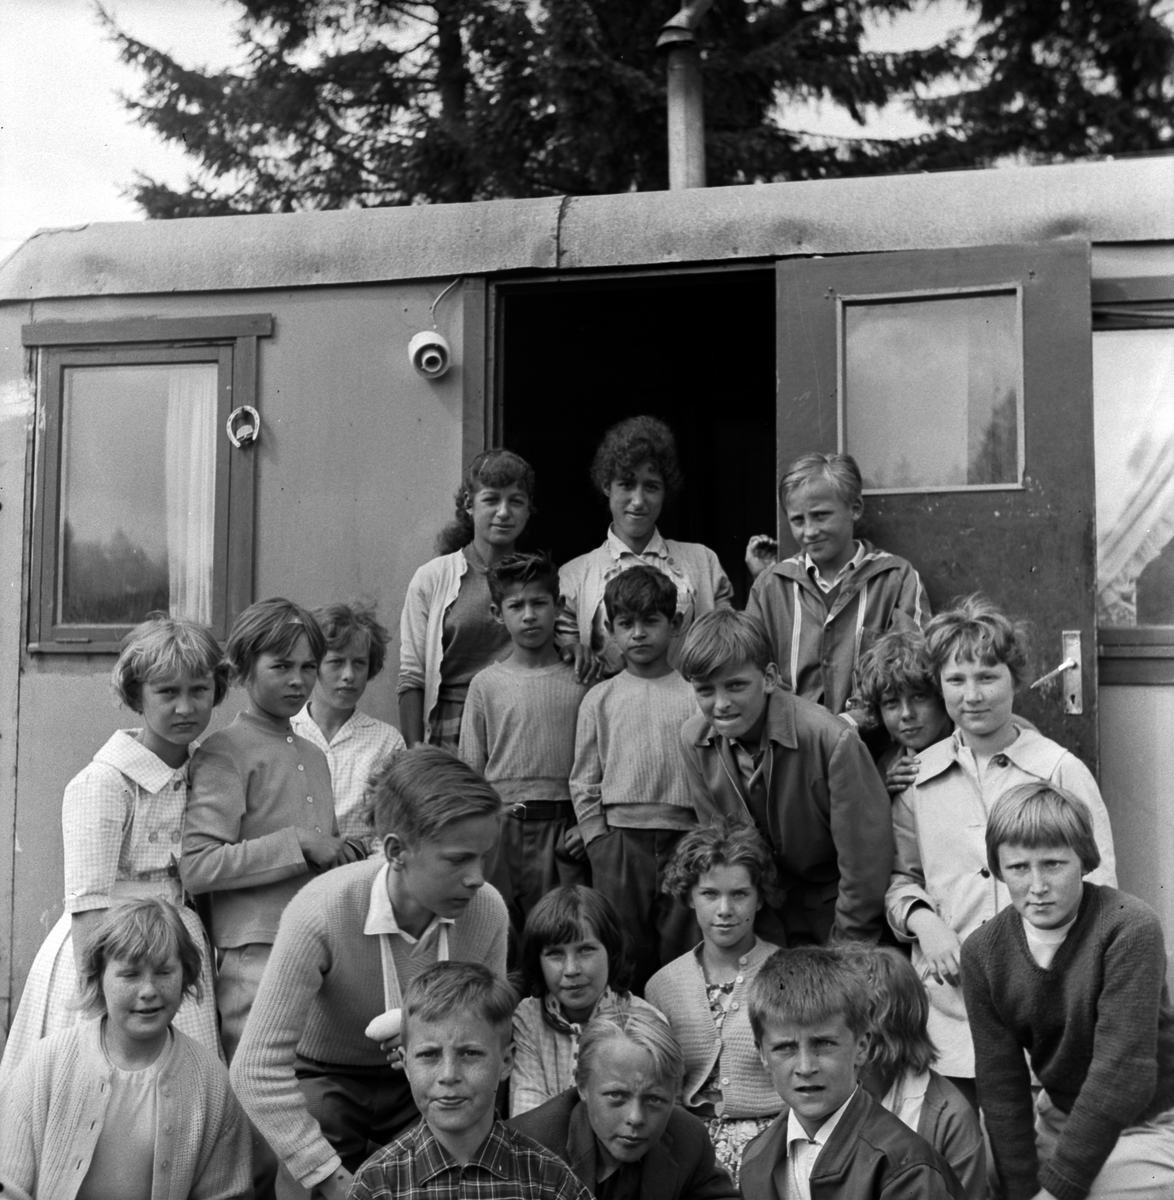 År 1960 på våren är Klass 5 från Österängsskolan i Jönköping på skolresa i Västergötland tillsammans med sin lärare Göte Ohlsson. De råkade på fyra romer och fotograferades med dem vid husvagnen.
På Österängsskolan var det tradition att man i 4:an åkte till Vadstena och Omberg, i 5:an till Västergötland (Falbygden, Skara, Varnhem) och i 6:an en resa till glasbruk i Småland.